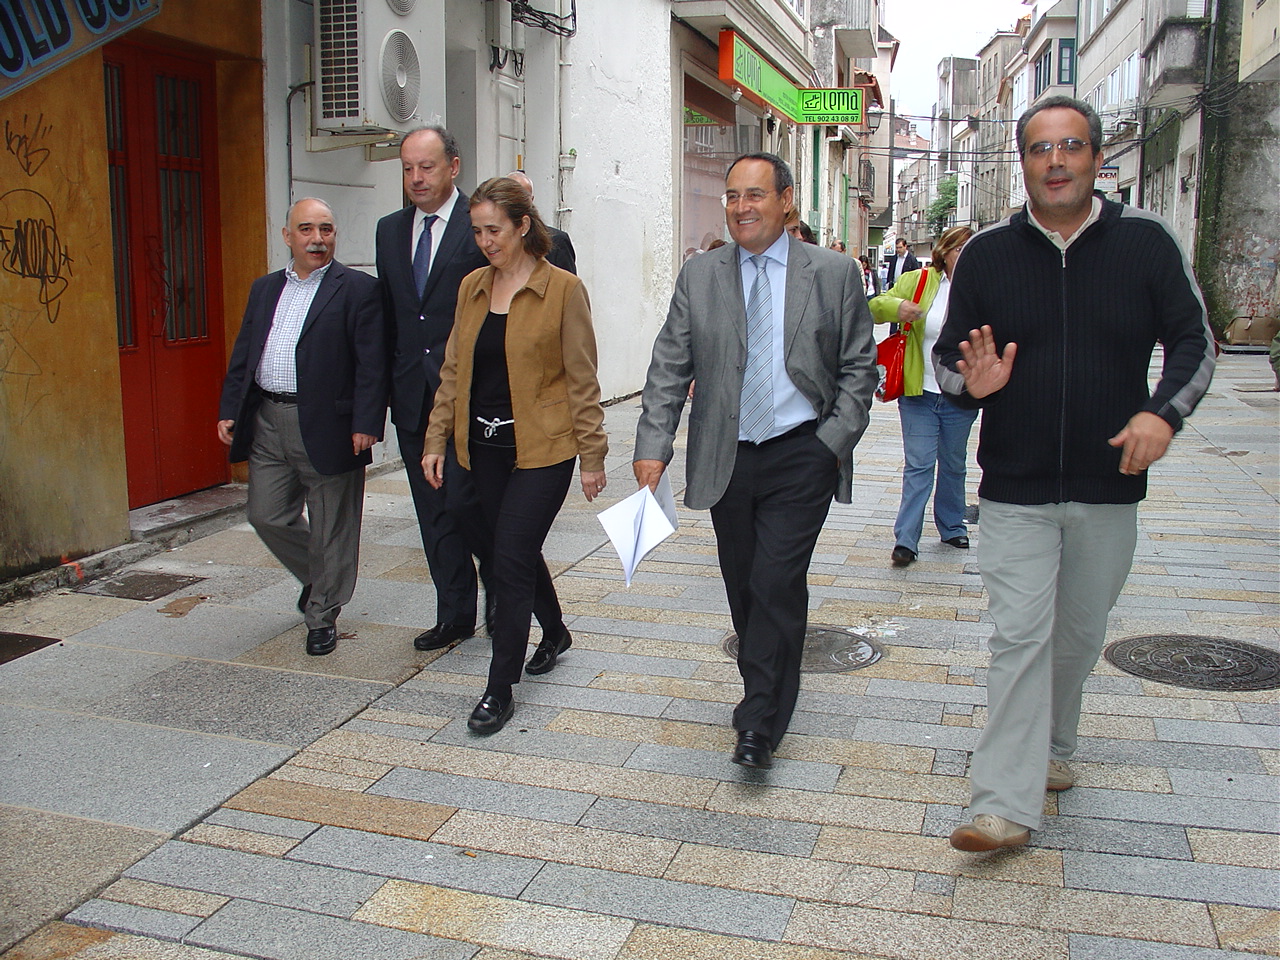 Los 24 proyectos de Vilagarcía incluidos en el Fondo Estatal de Inversión Local (Plan E) permitieron crear 275 empleos